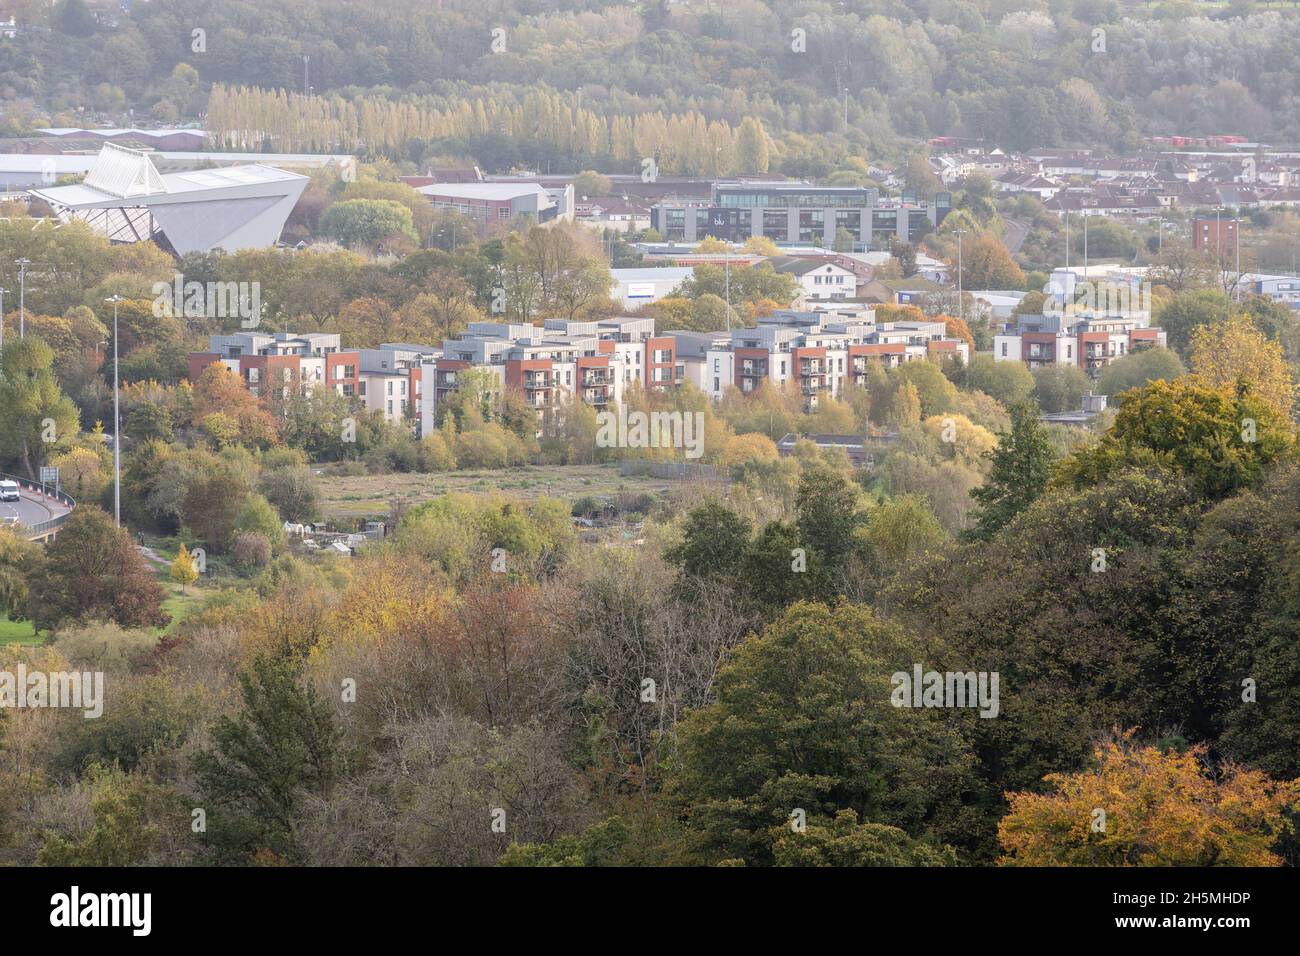 El paisaje urbano de Ashton Vale en Bristol, incluyendo el estadio Ashton Gate, el campus Imperial Tobacco y los edificios de apartamentos de Paxton Drive. Foto de stock